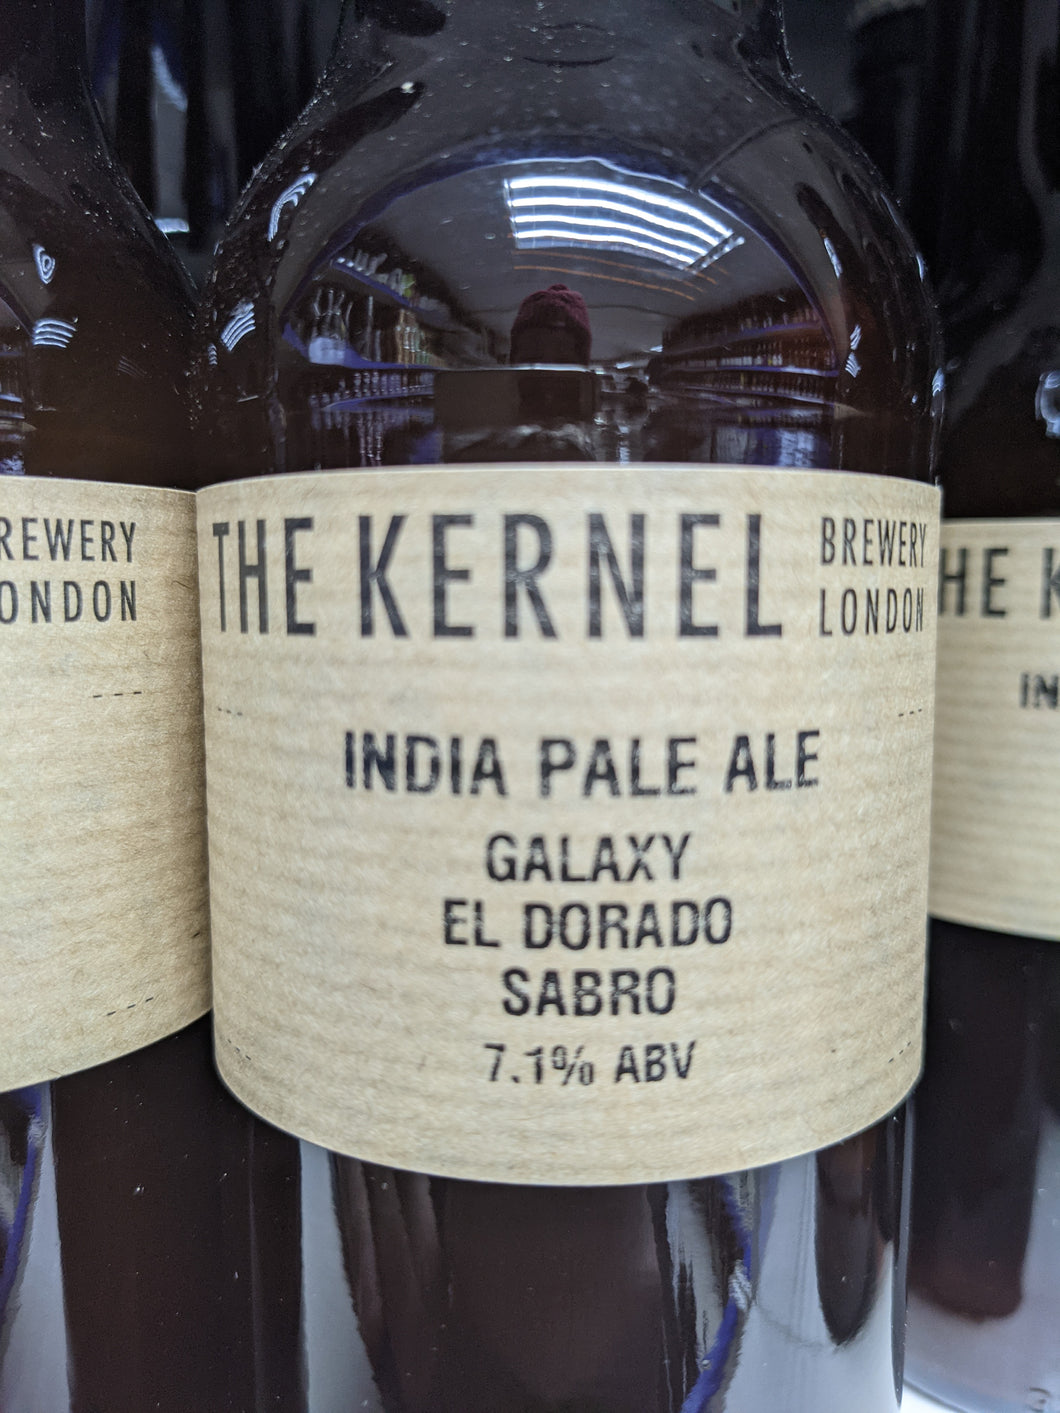 IPA Galaxy El Dorado Sabro - The Kernel Brewery - IPA, 7.1%, 330ml Bottle